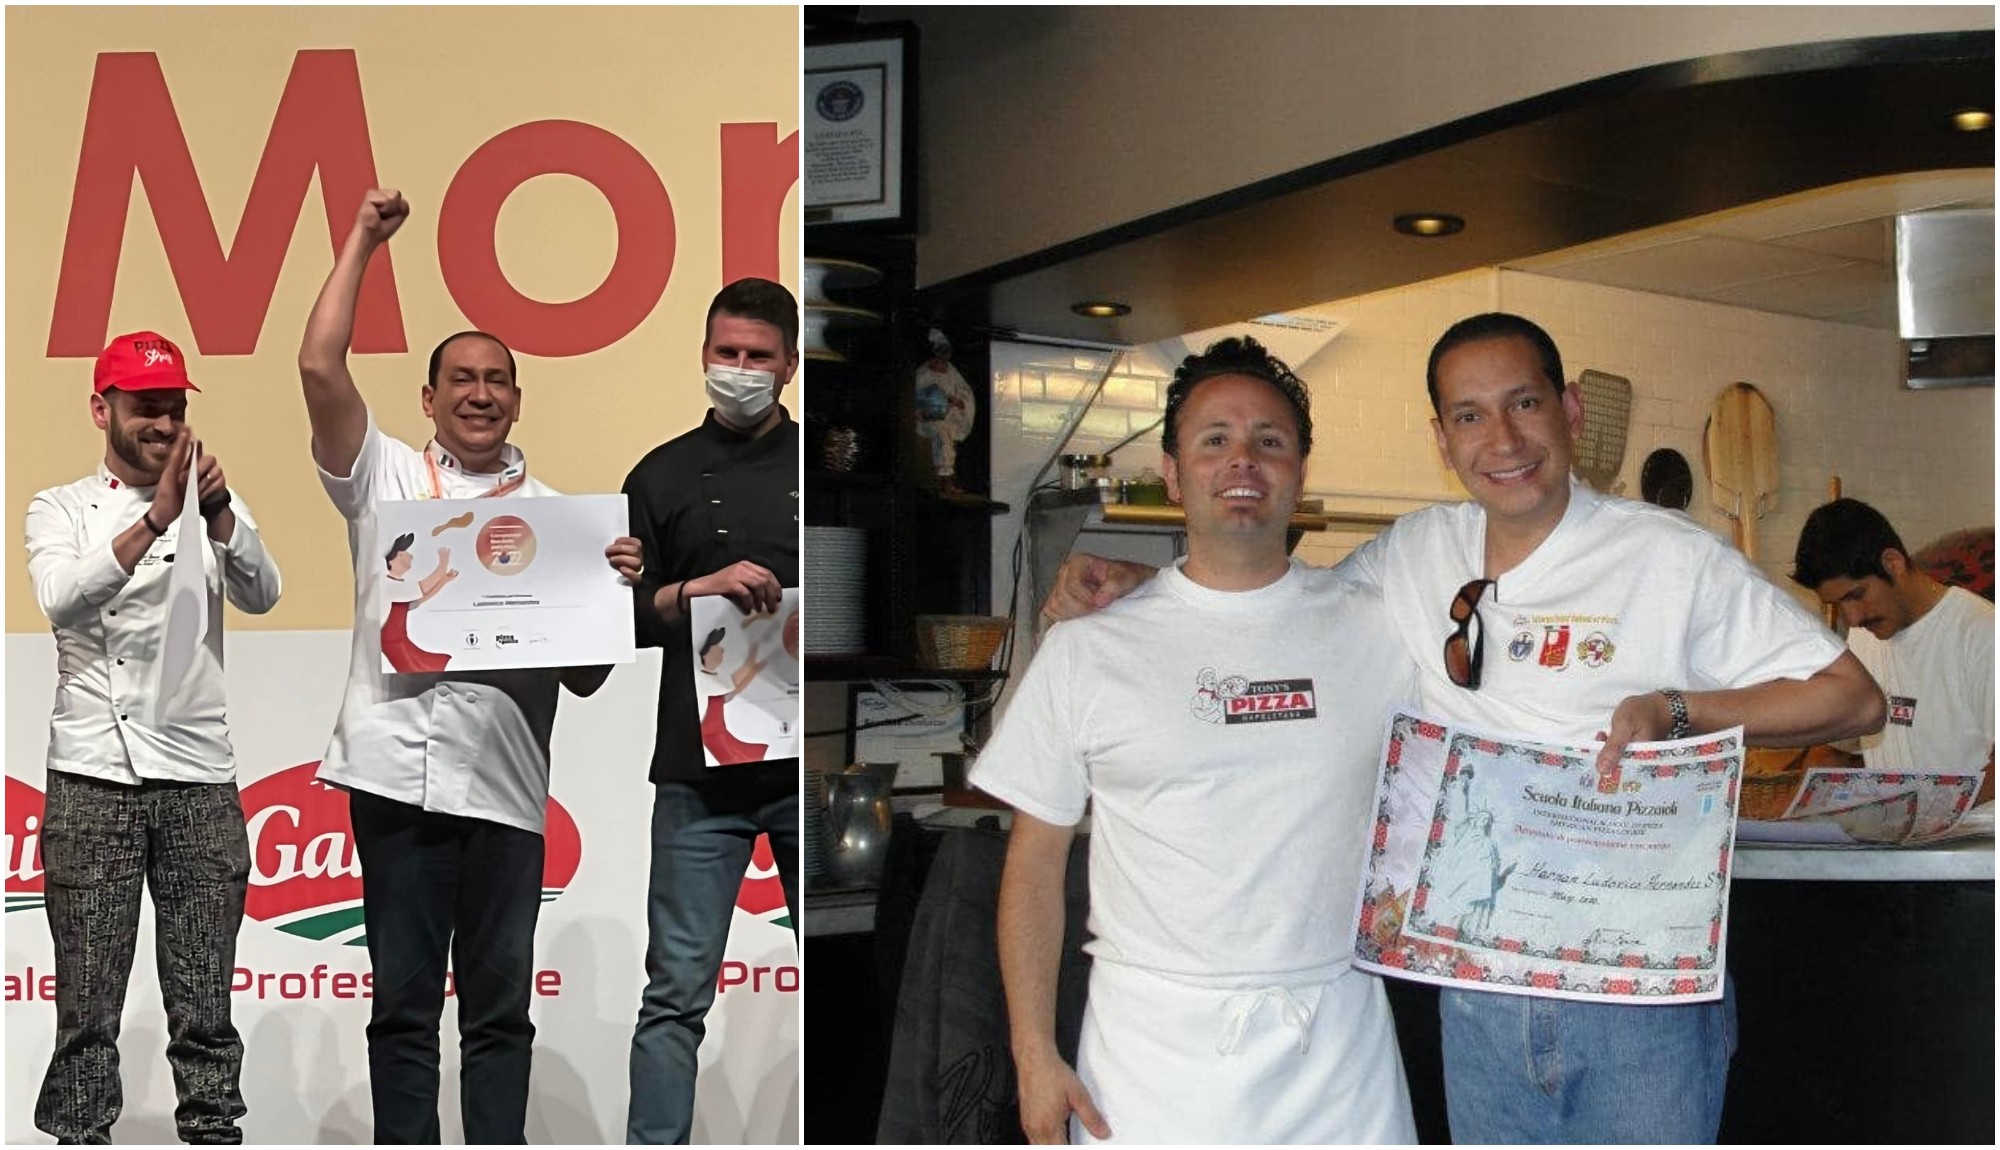 Hondureño entre los mejores cocineros de pizza en concurso de Italia